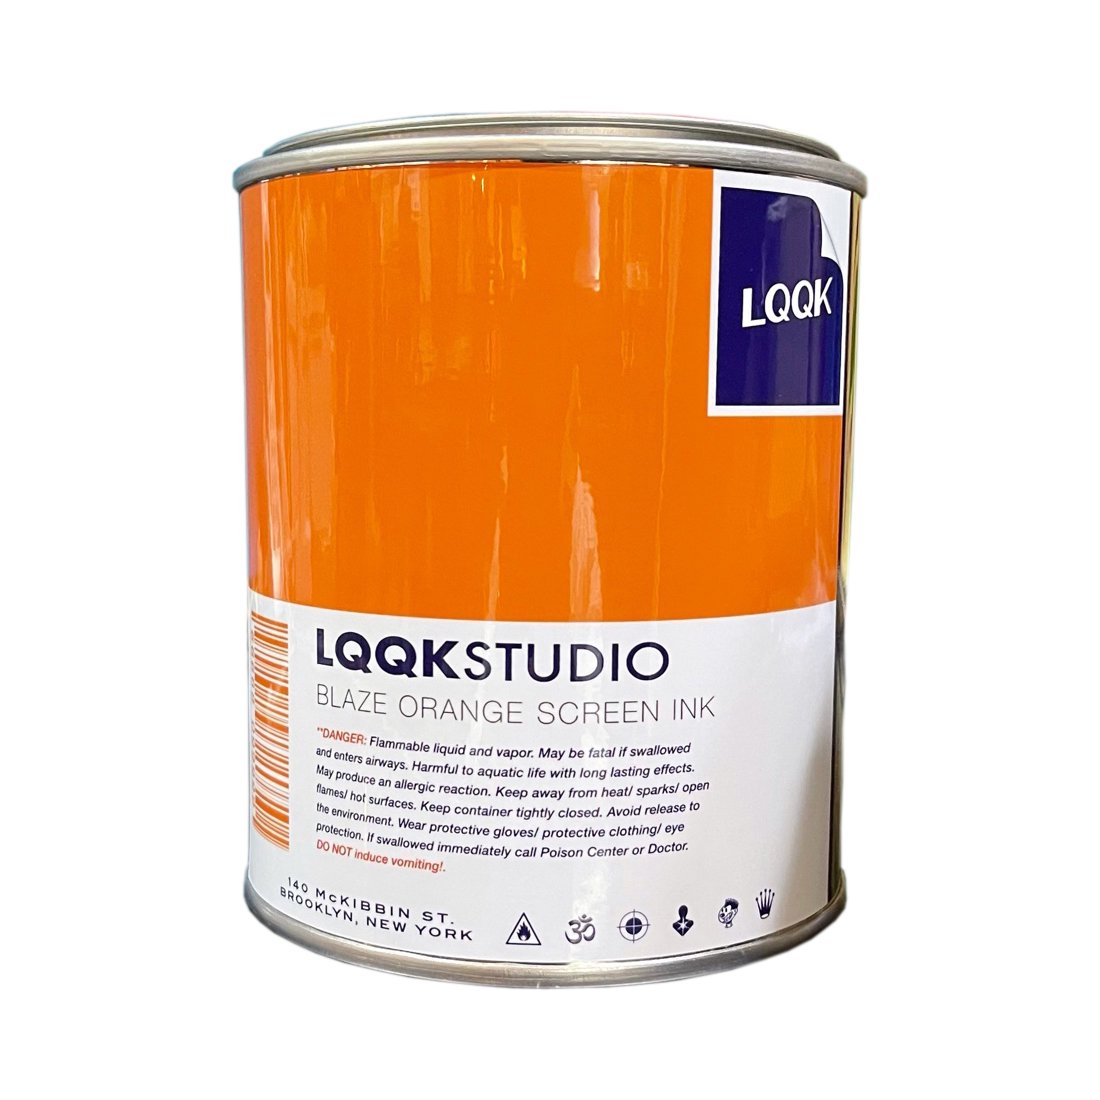 LQQK STUDIO / CANDLE